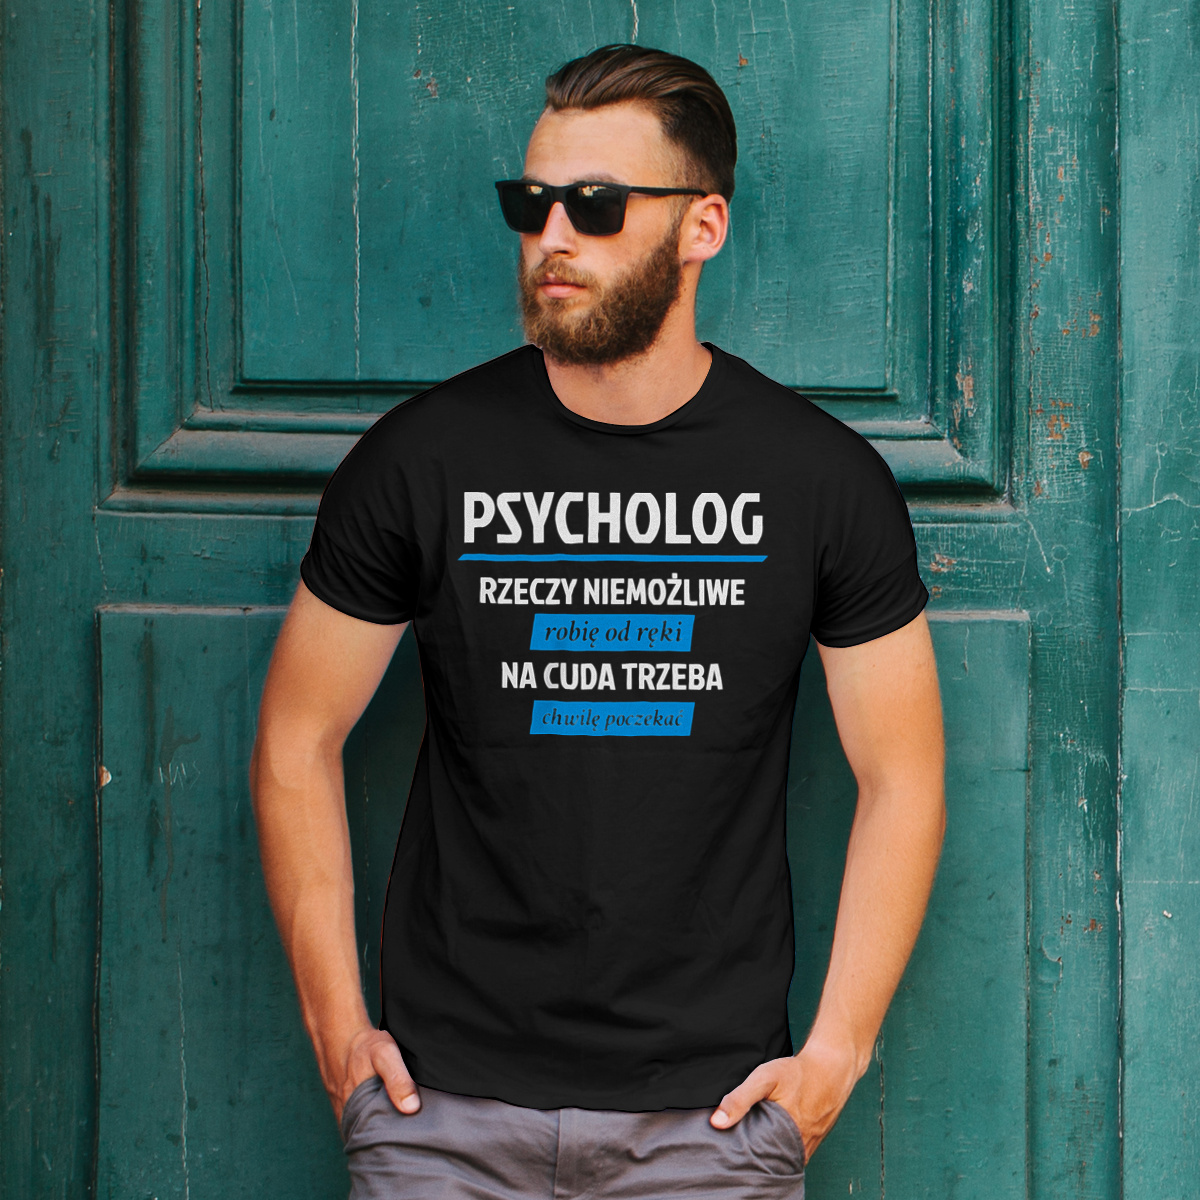 Psycholog - Rzeczy Niemożliwe Robię Od Ręki - Na Cuda Trzeba Chwilę Poczekać - Męska Koszulka Czarna